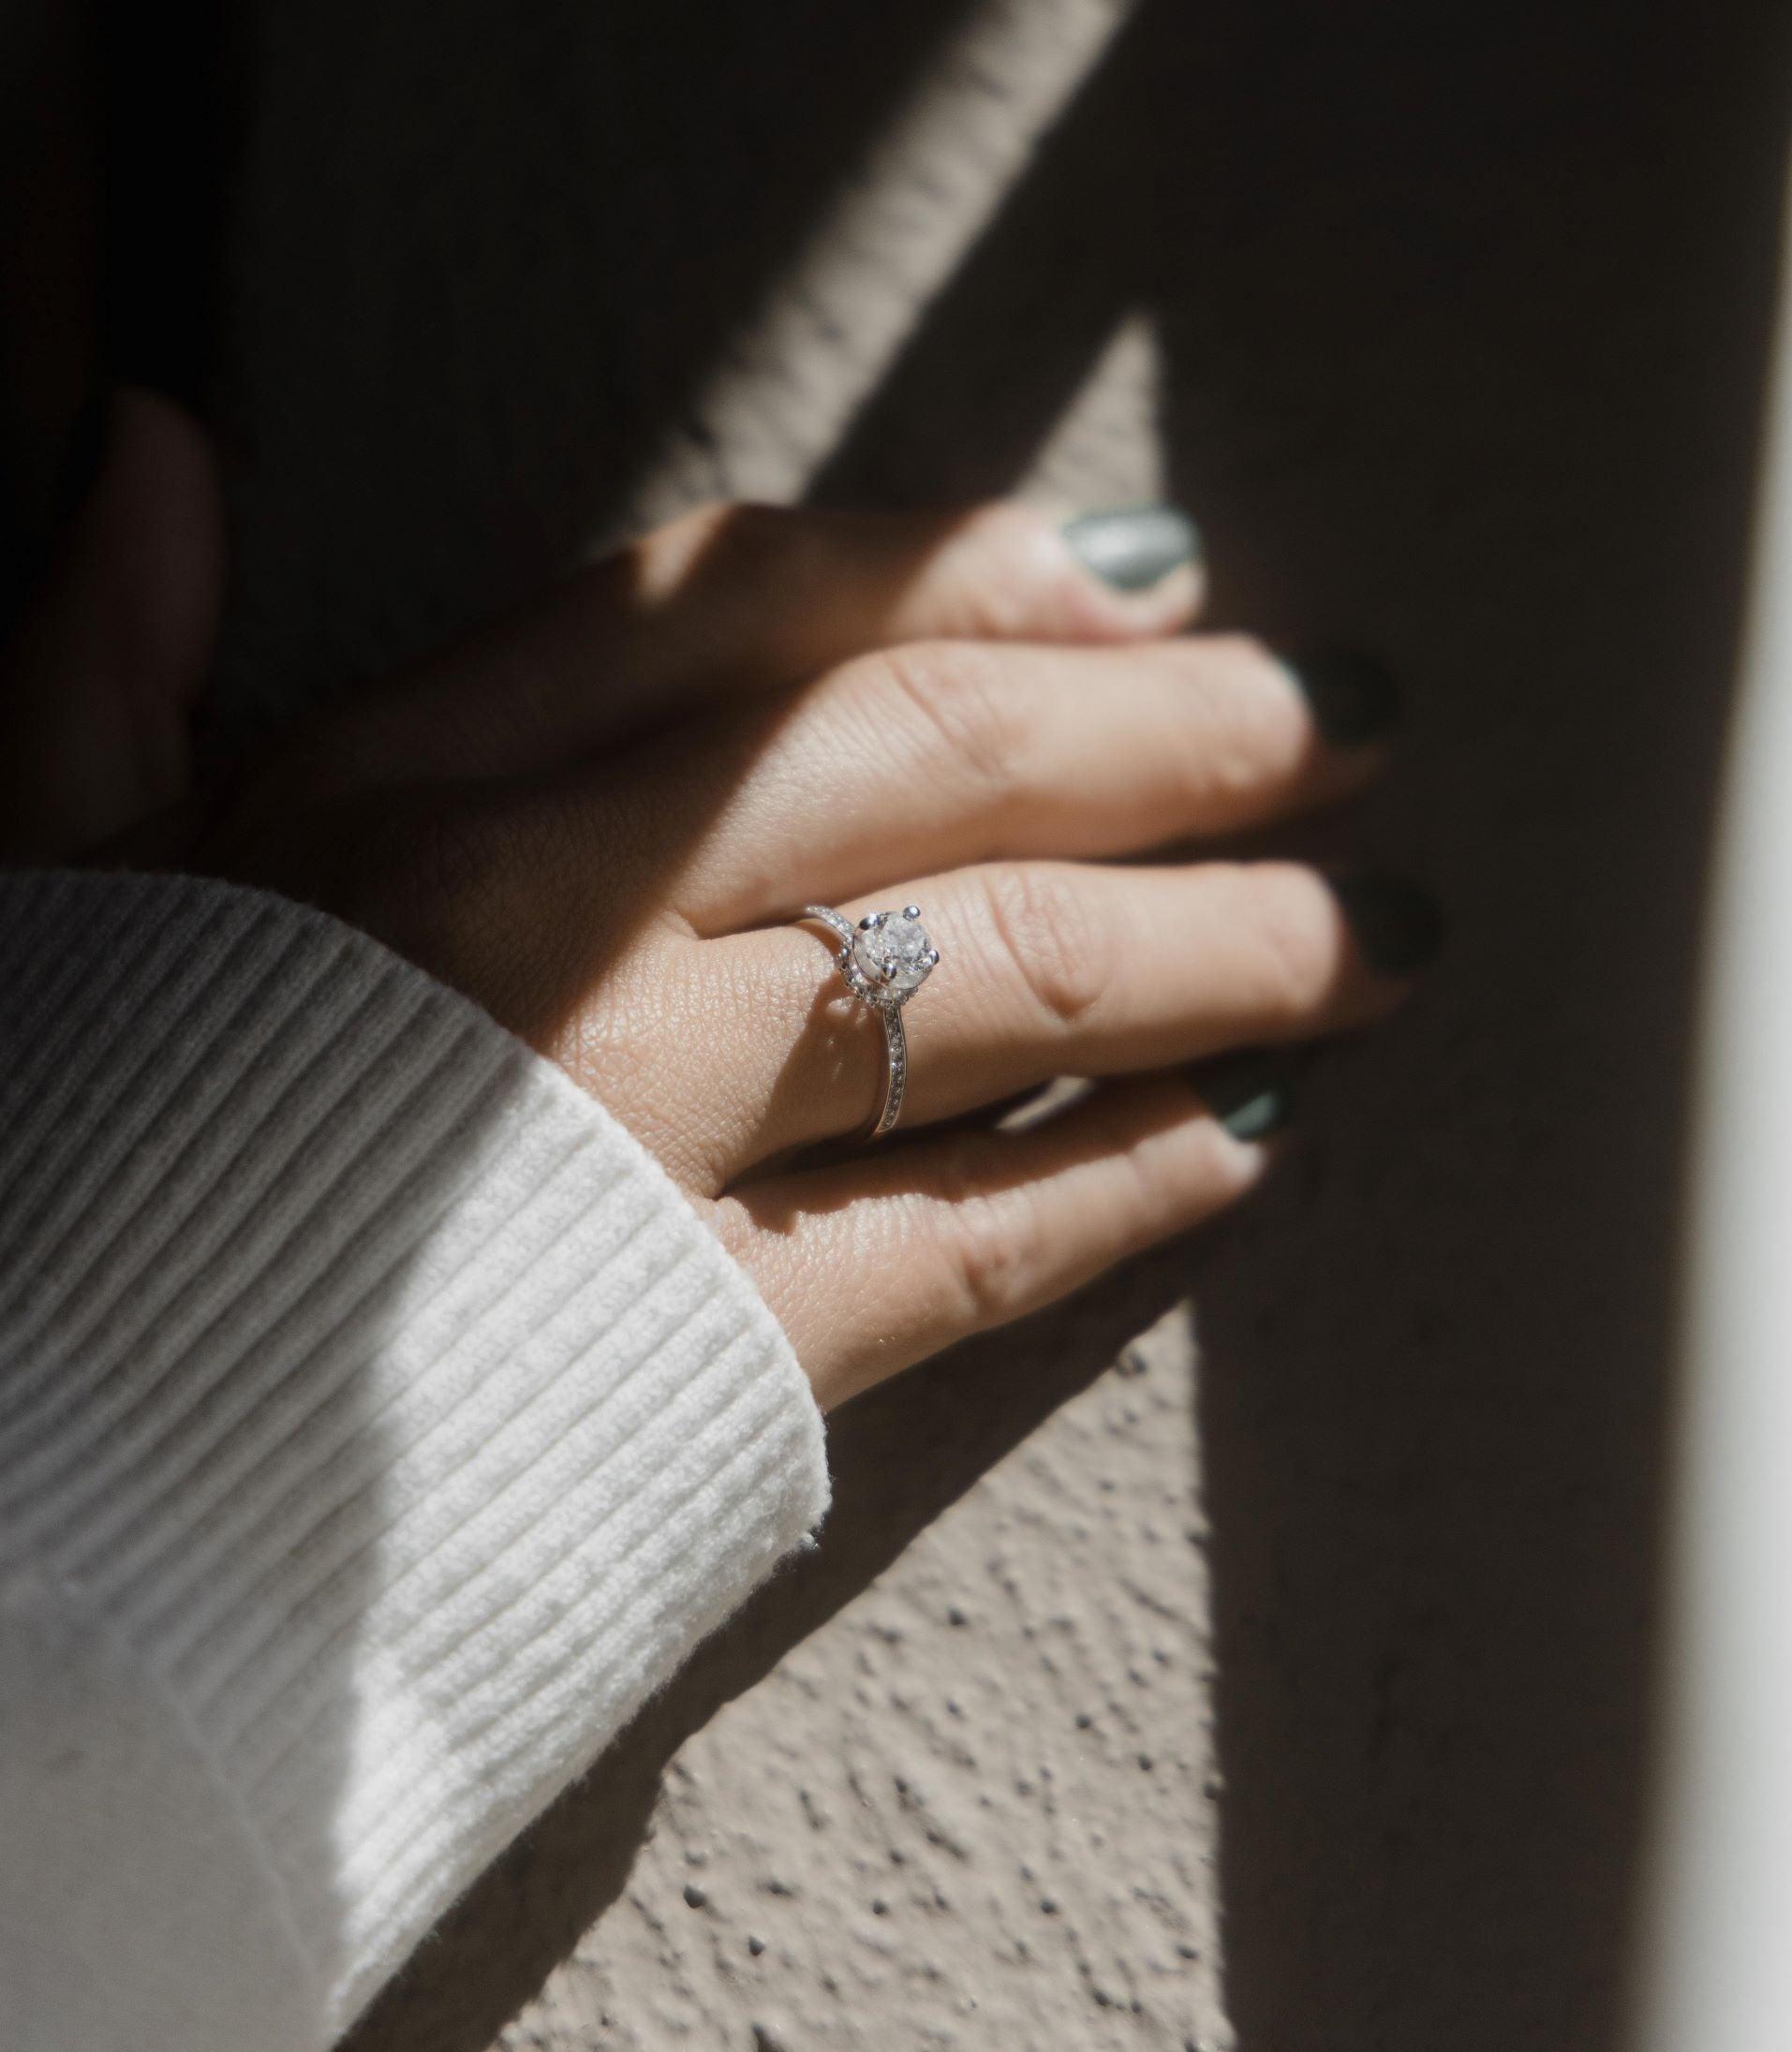 Μονόπετρο δαχτυλίδι με κεντρικό διαμάντι round cut, πλαίνές πέτρες από μικρότερα διαμάντια και στρογγυλό καστόνι σε σχήμα κορώνας κατασκευασμένο από λευκόχρυσο φορεμένο σε γυναικείο χέρι.